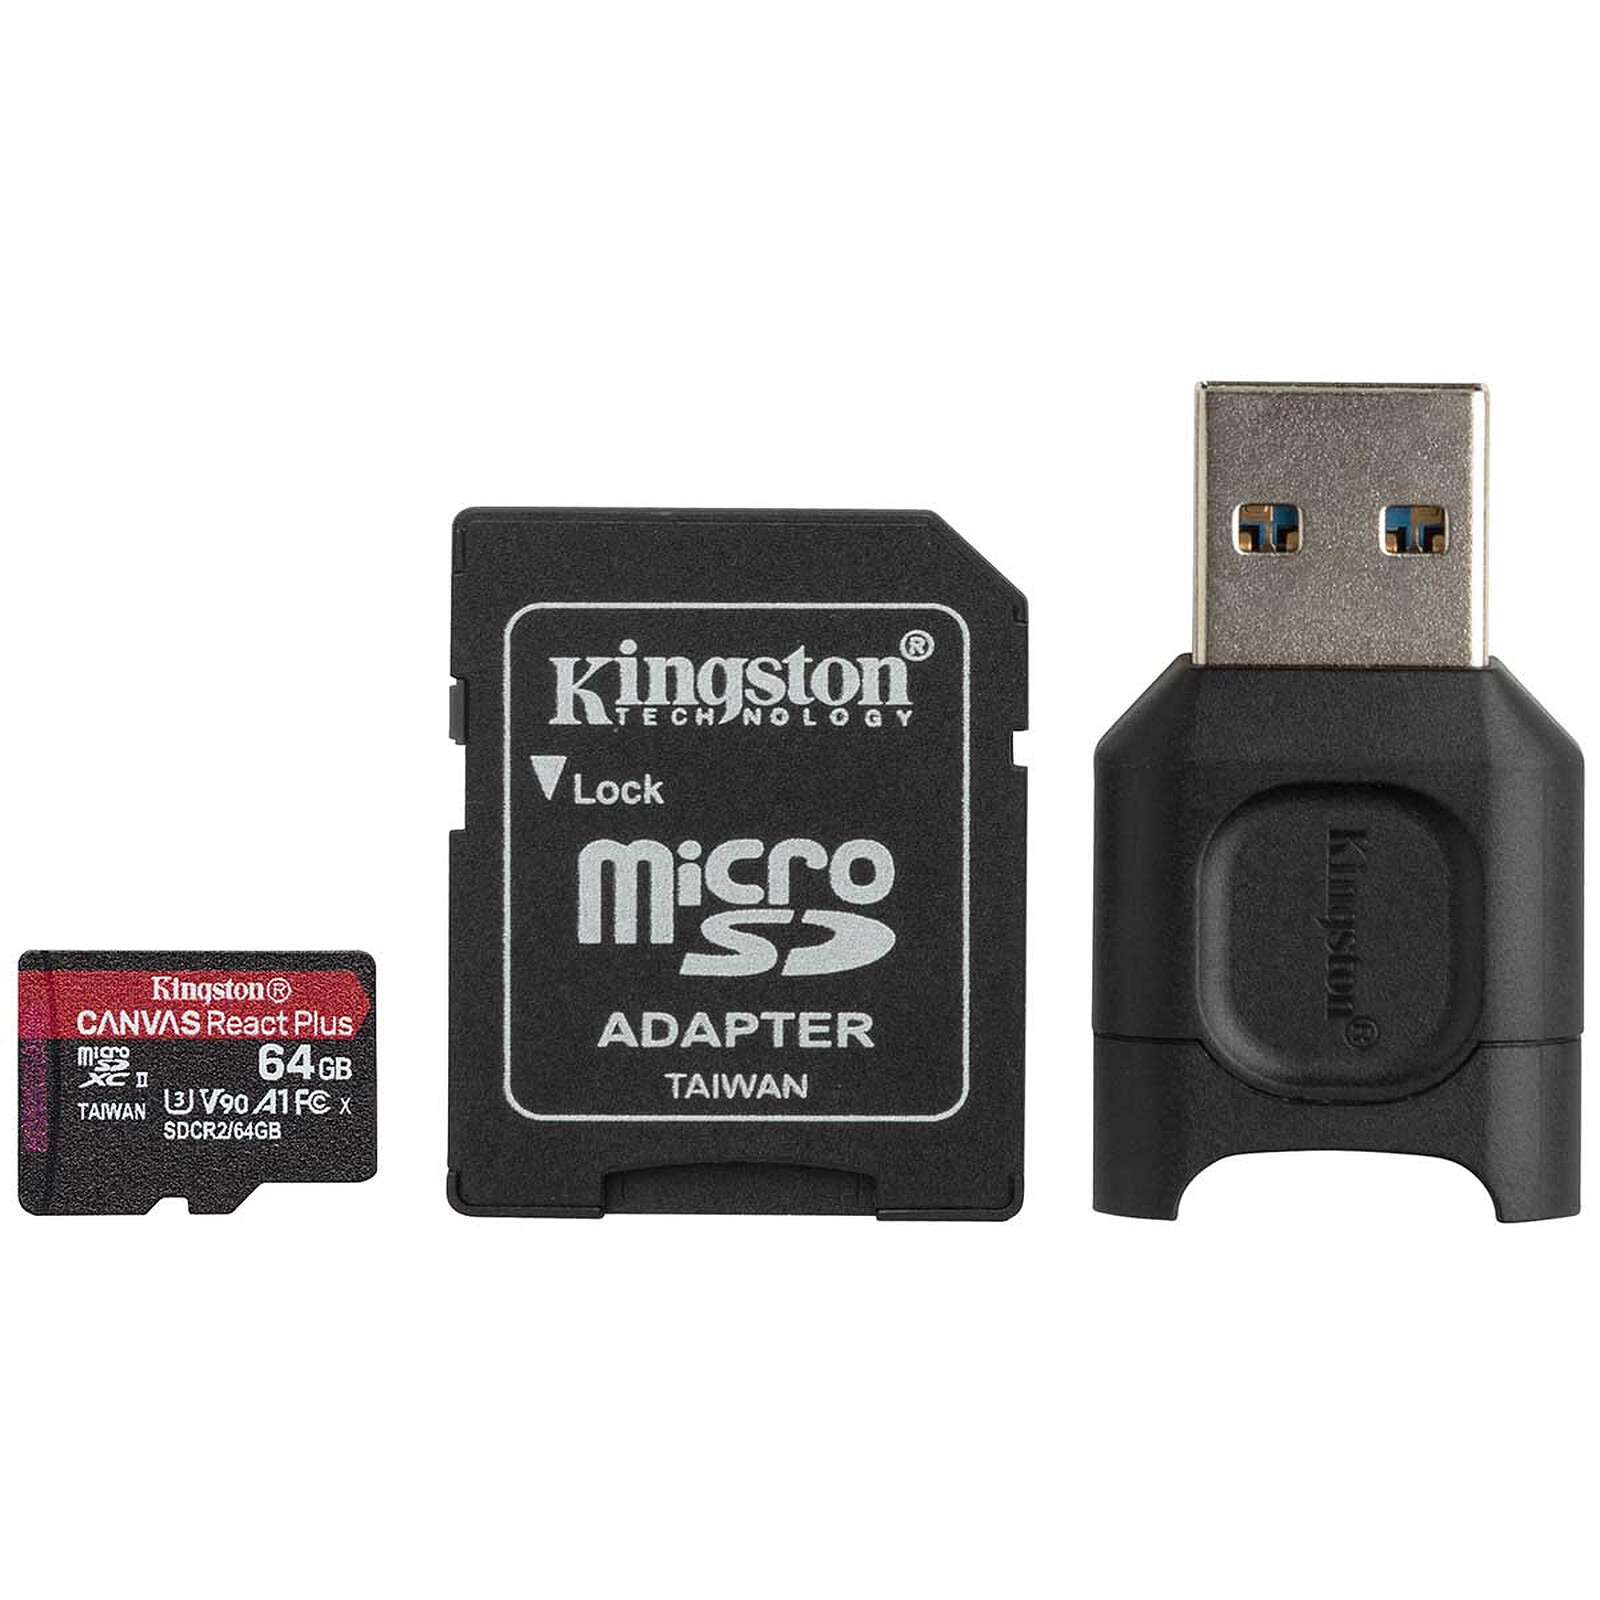 Carte mémoire Micro SD 128Go + adaptateur Kingston